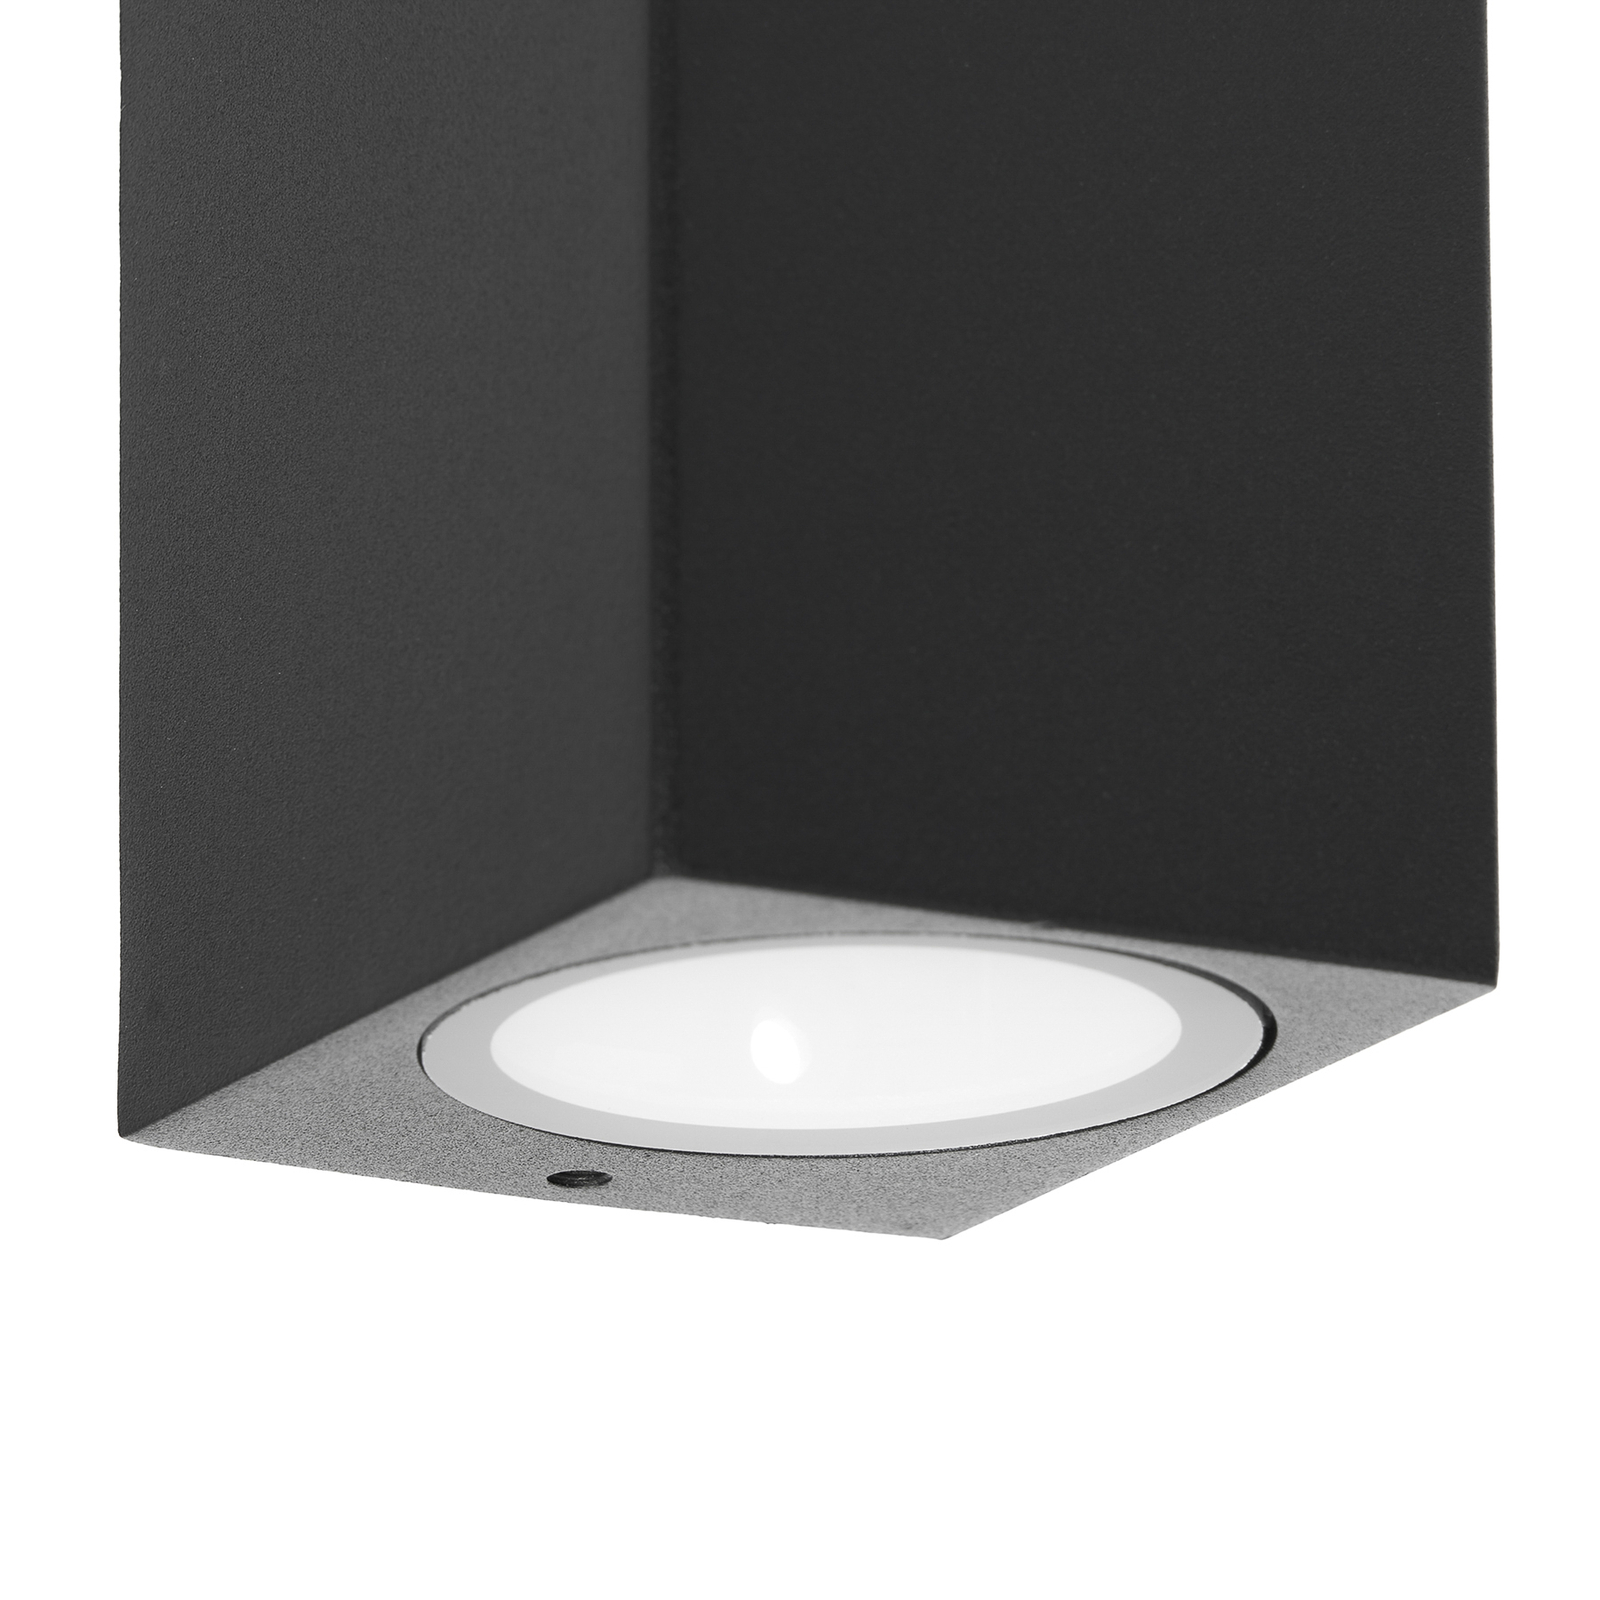 Prios vanjska zidna svjetiljka Tetje, crna, kvadratna, 16 cm, set 4 kom